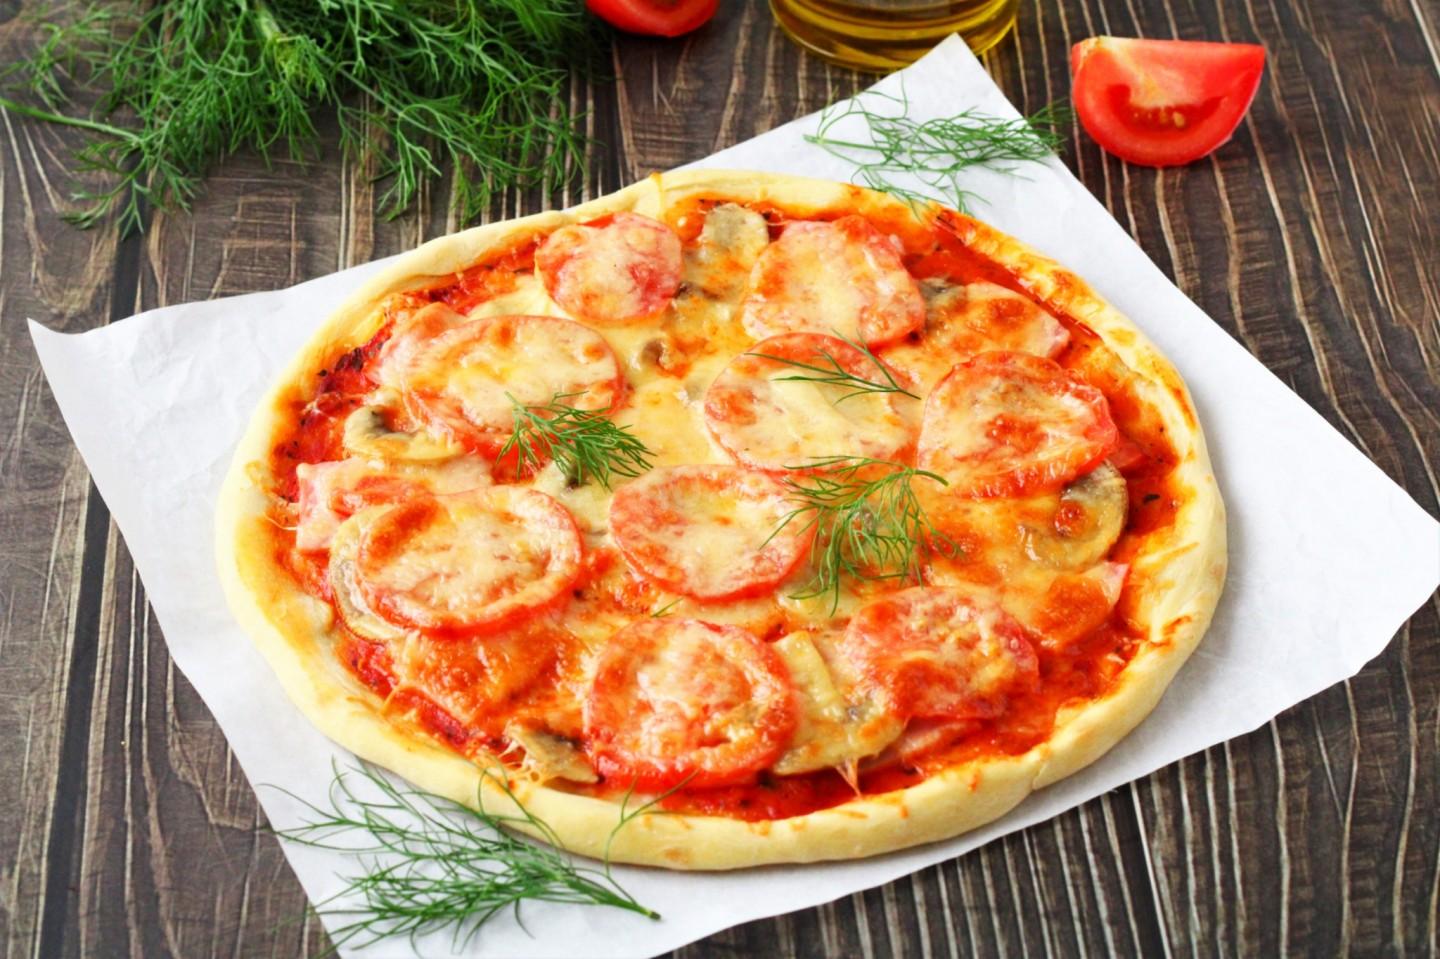 тесто для пиццы как в пиццерии тонкое рецепт вкусное нежное домашний без дрожжей фото 115